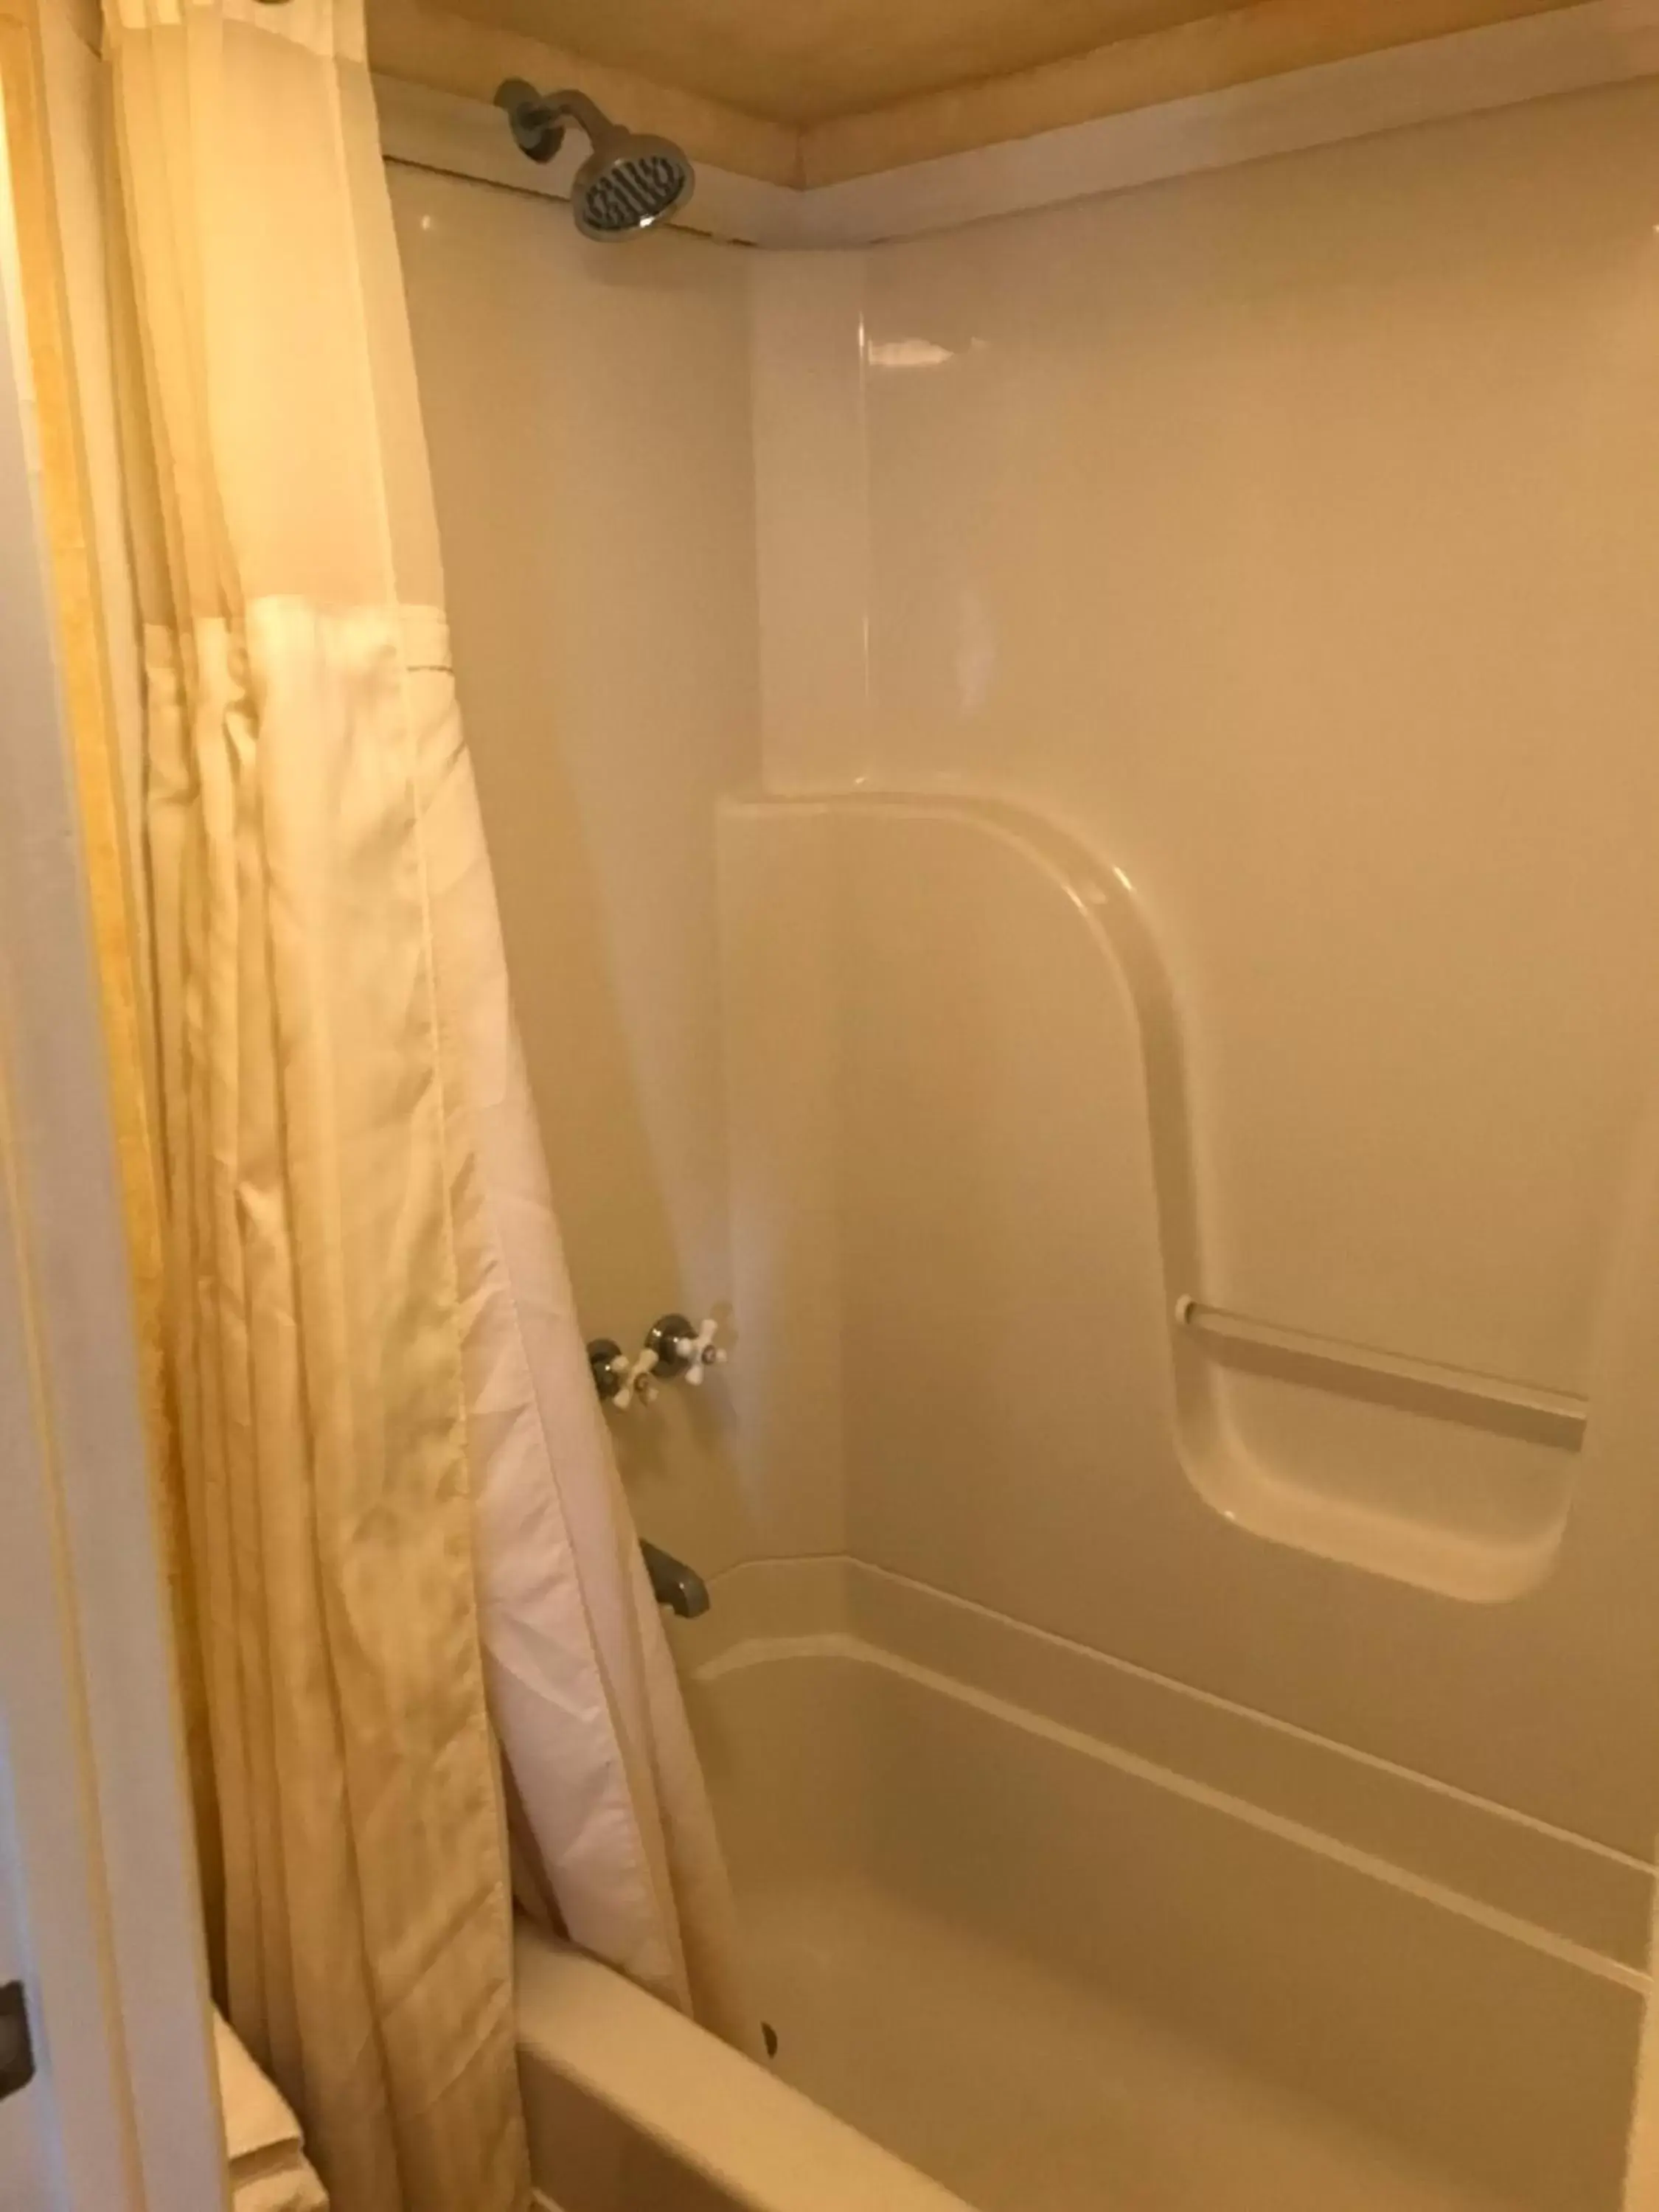 Shower, Bathroom in Hotel Kitsmiller on Main